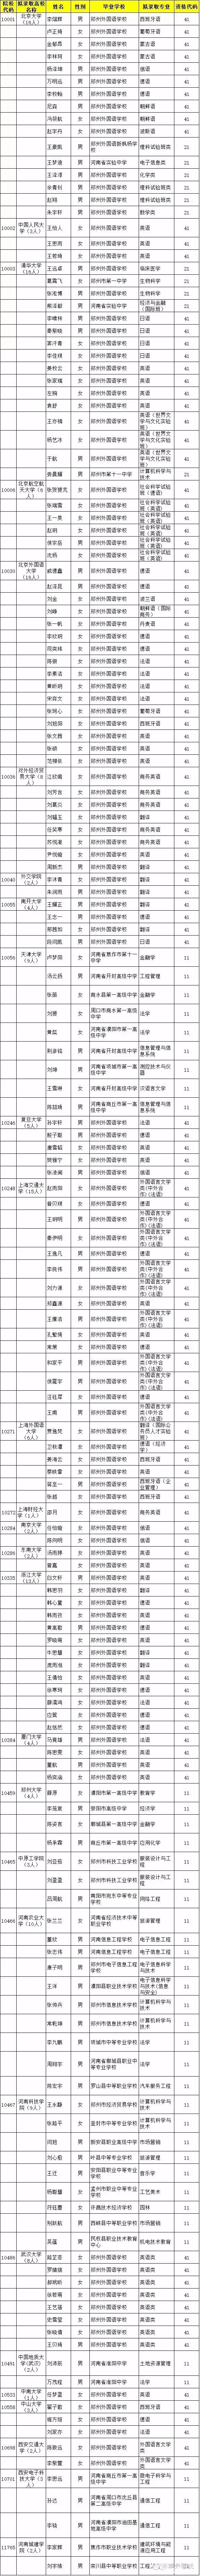 2016河南保送生名单曝光，外国语128名成最大赢家1